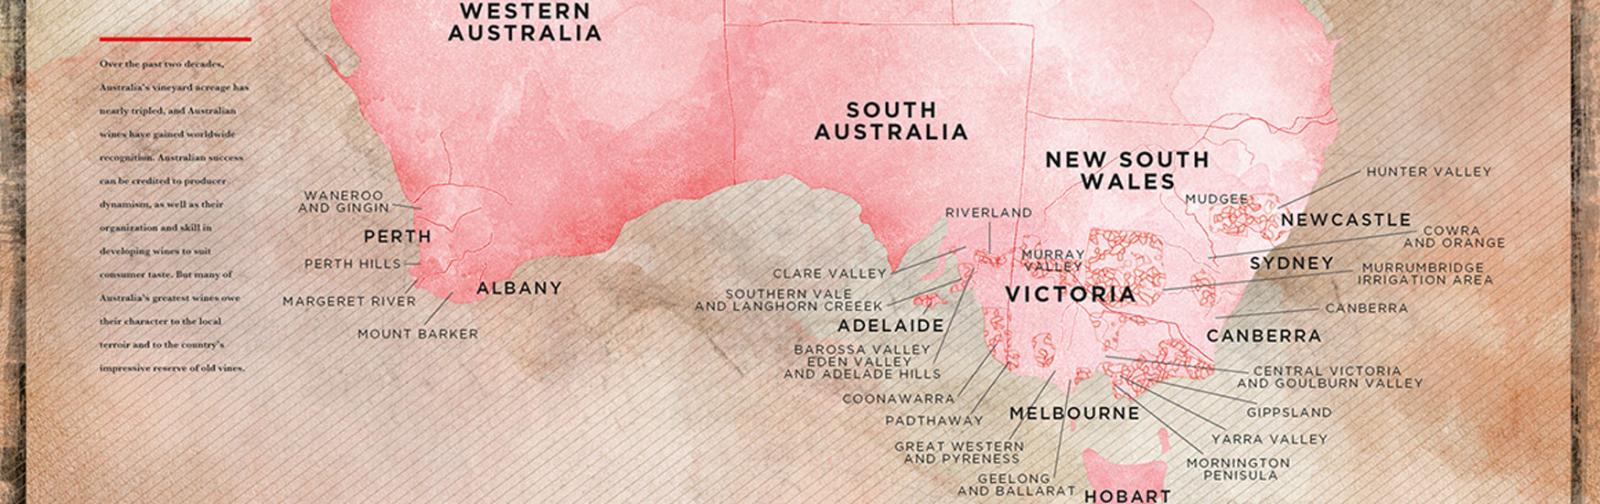 Australian Wine Region